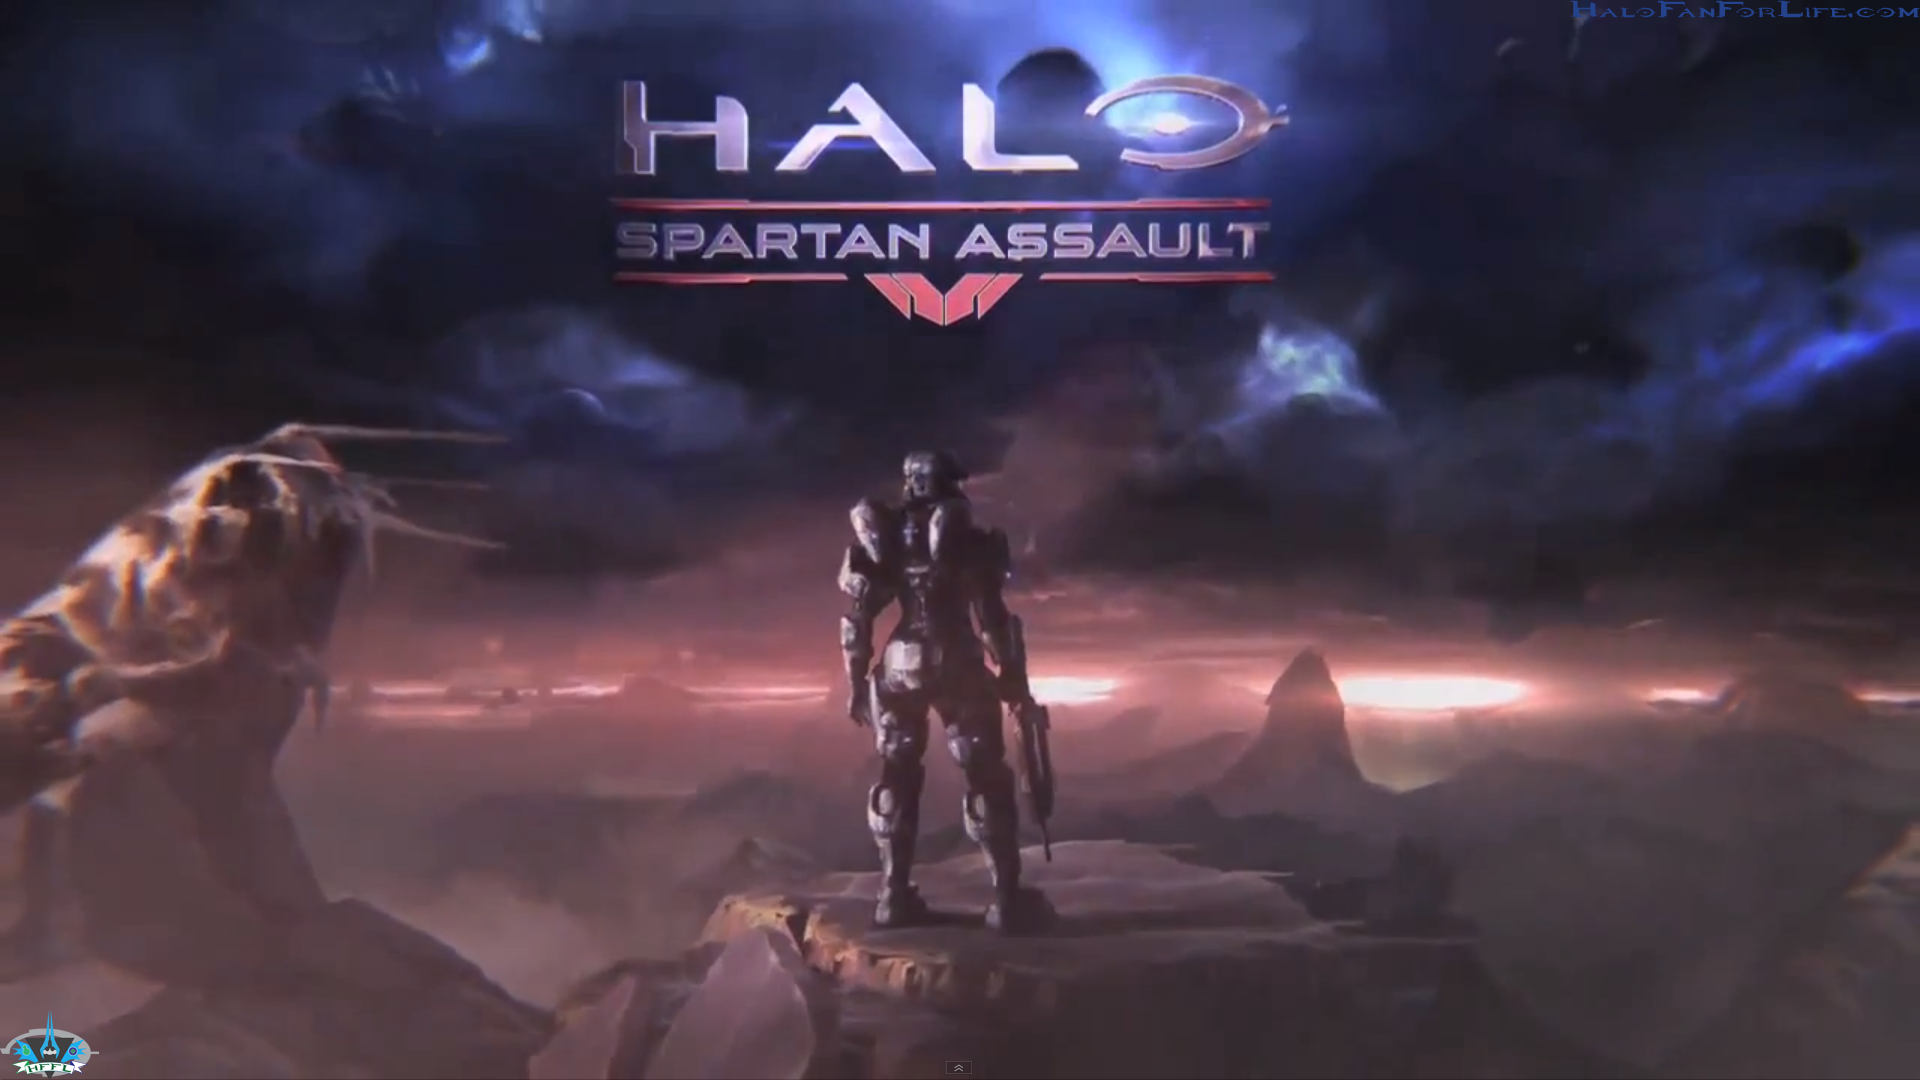 Halo: Spartan Assault Backgrounds, Compatible - PC, Mobile, Gadgets| 1920x1080 px